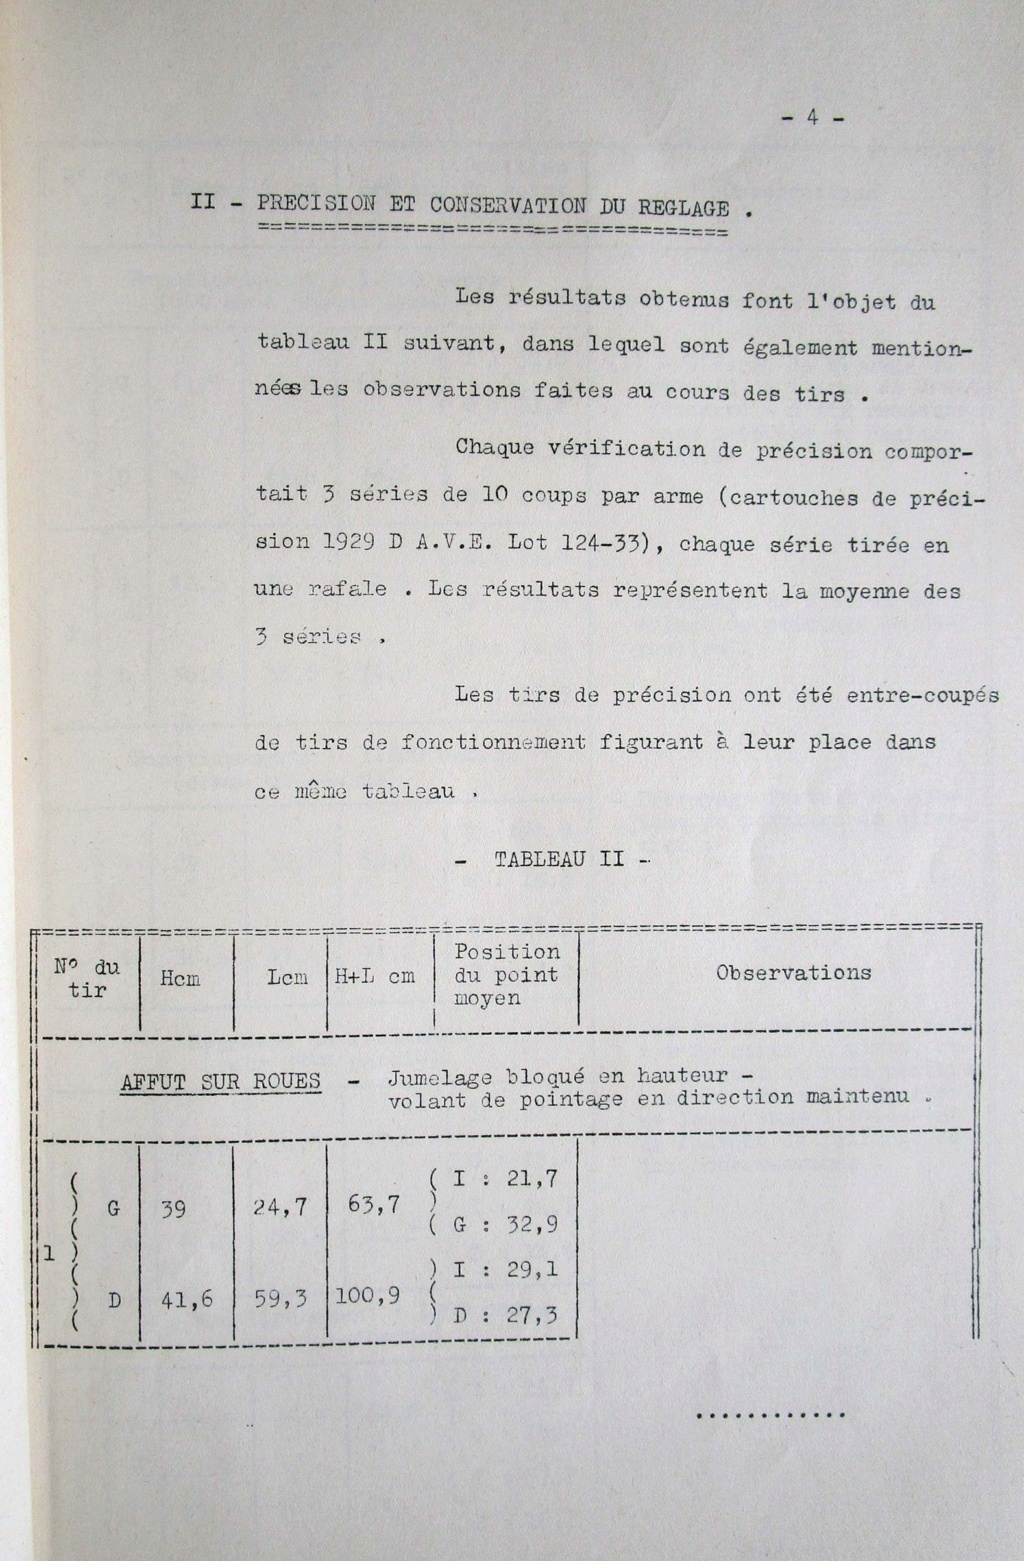 La belle carrière de la mitrailleuse de 7,5 mm MAC Mle 1931 dite "Reibel" - Page 2 Img_4913